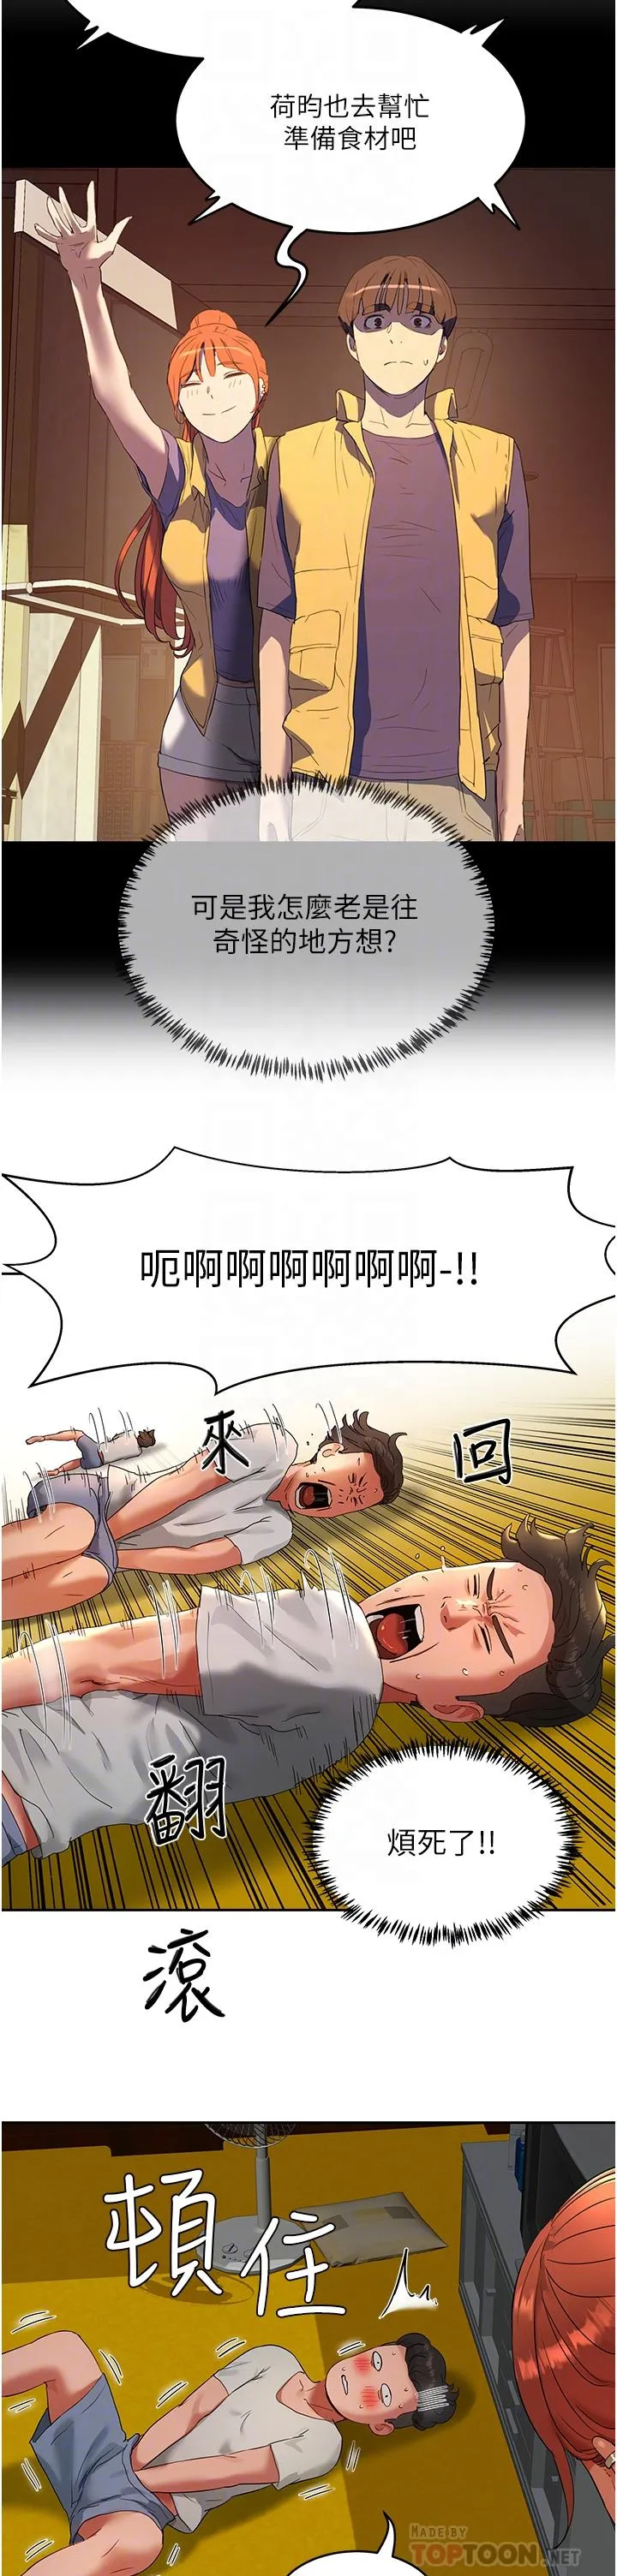 韩国污漫画 夏日深處 第43话-帮逸轩洗GG 8